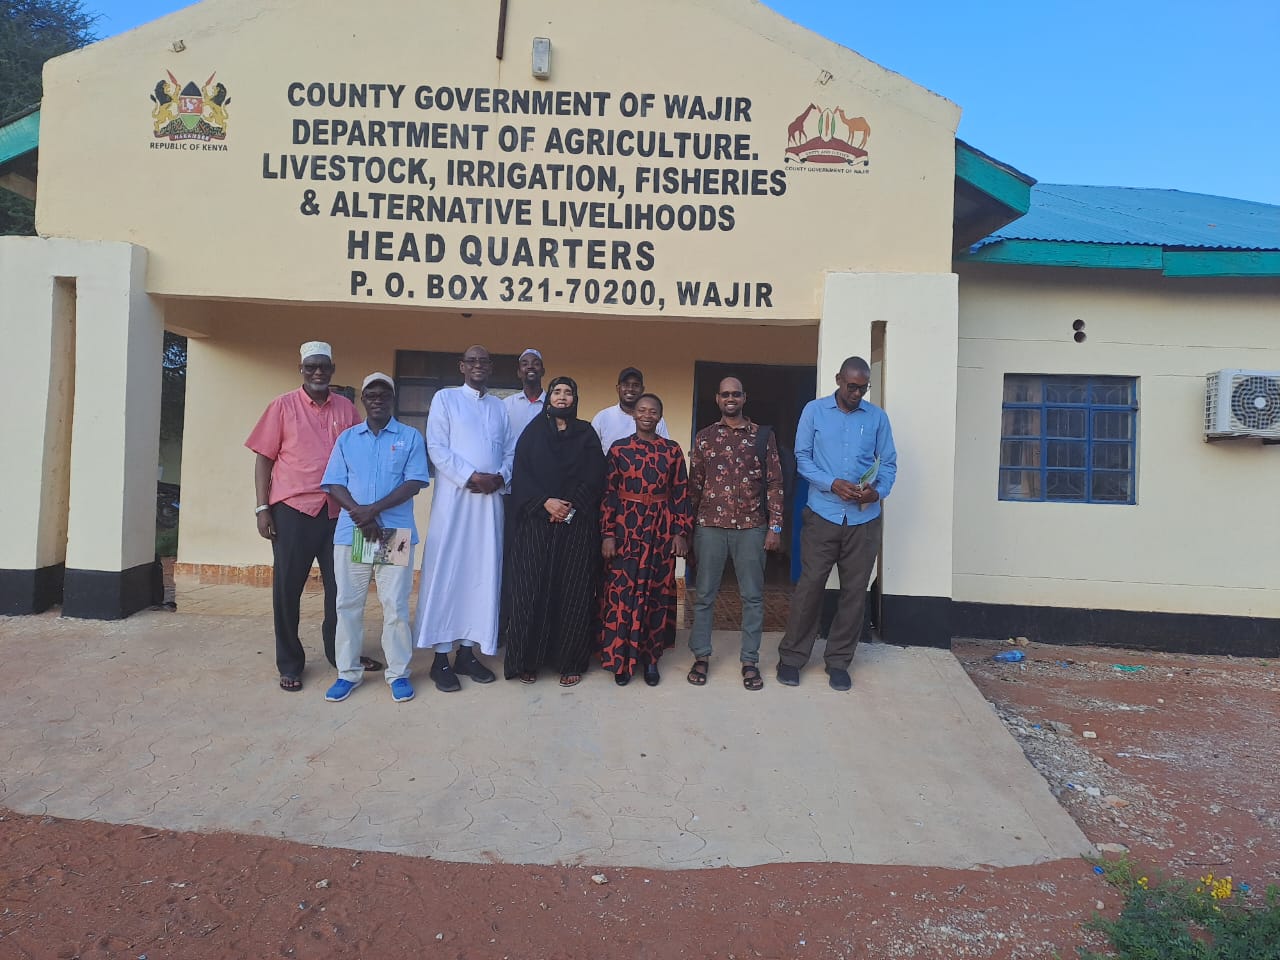 KENTTEC in Wajir – Reducing the burden of African Animal Trypanosomiasis (AAT) in the region